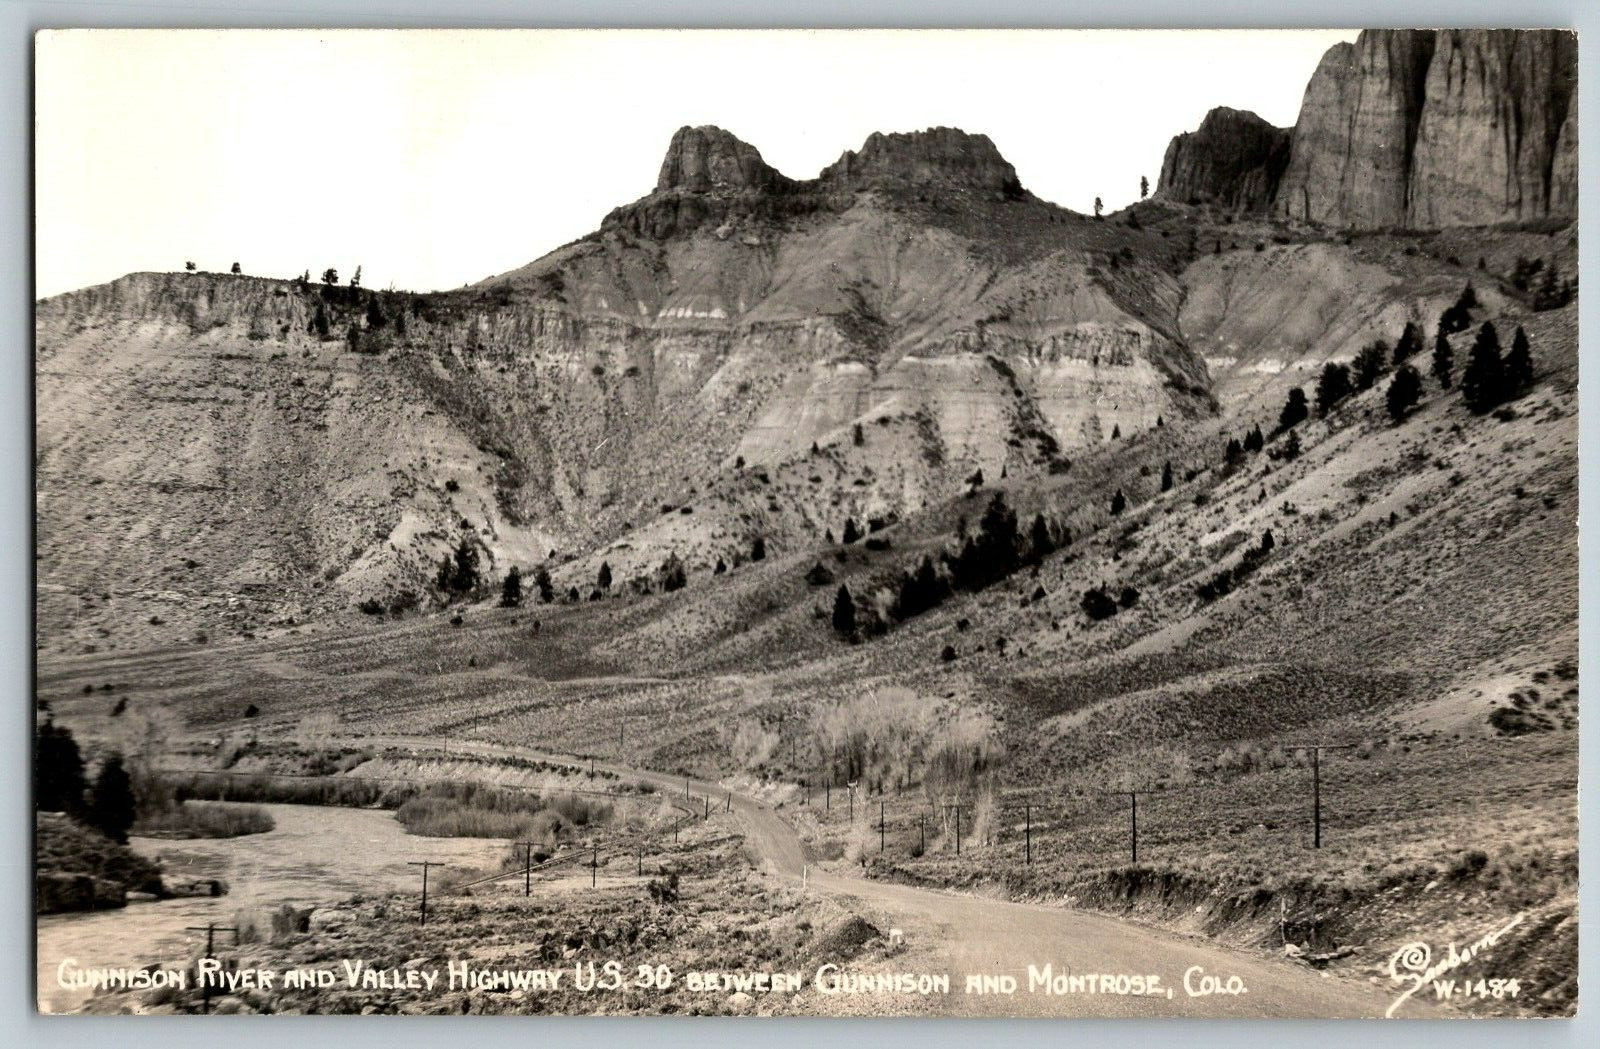 RPPC Vintage Postcard - Gunnison River & Valley Highway U.S 50, Colorado